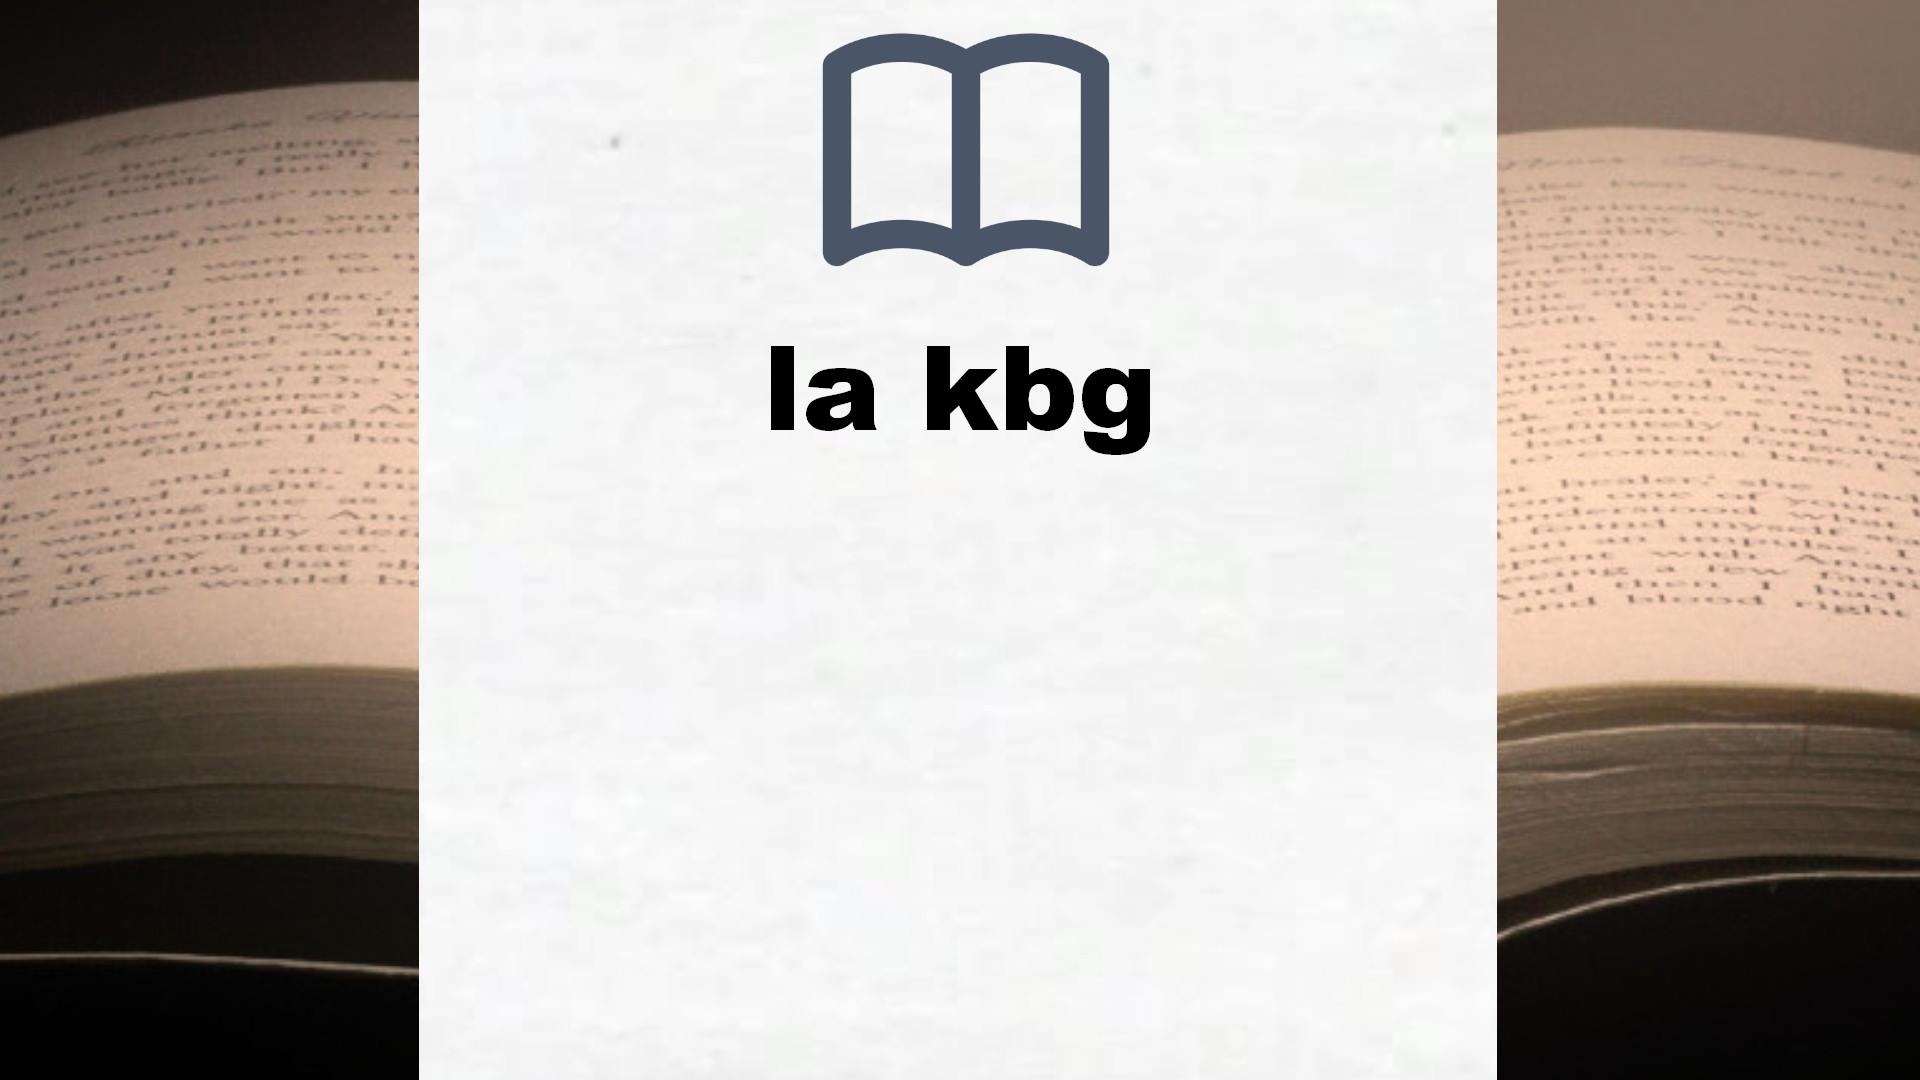 Libros sobre la kbg